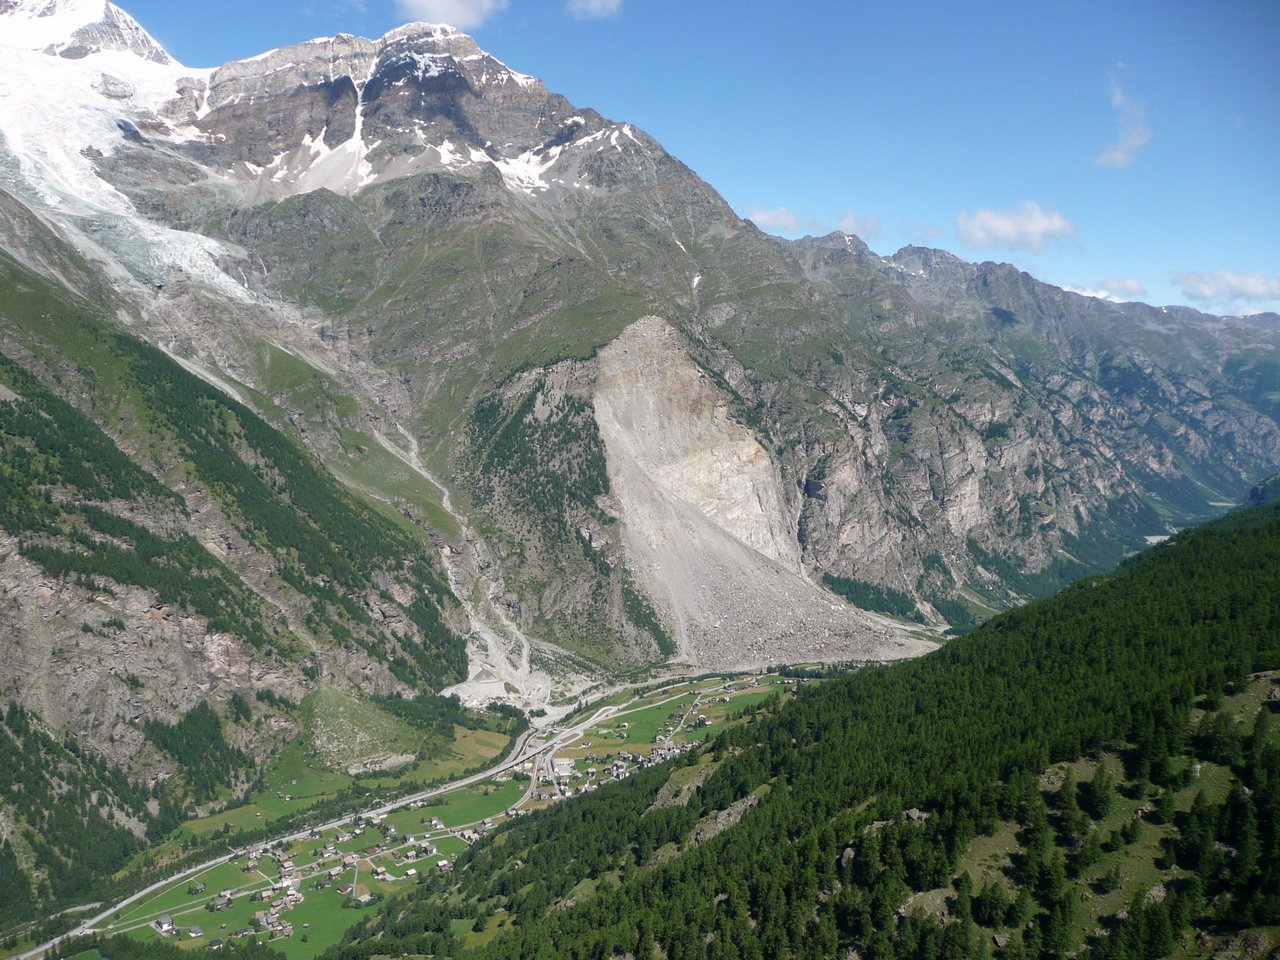 30 Jahre nach der Katastrophe ist man mit modernster Technik vor weiteren Bergstürzen geschützt. (Bild Wandervogel, Wikipedia)